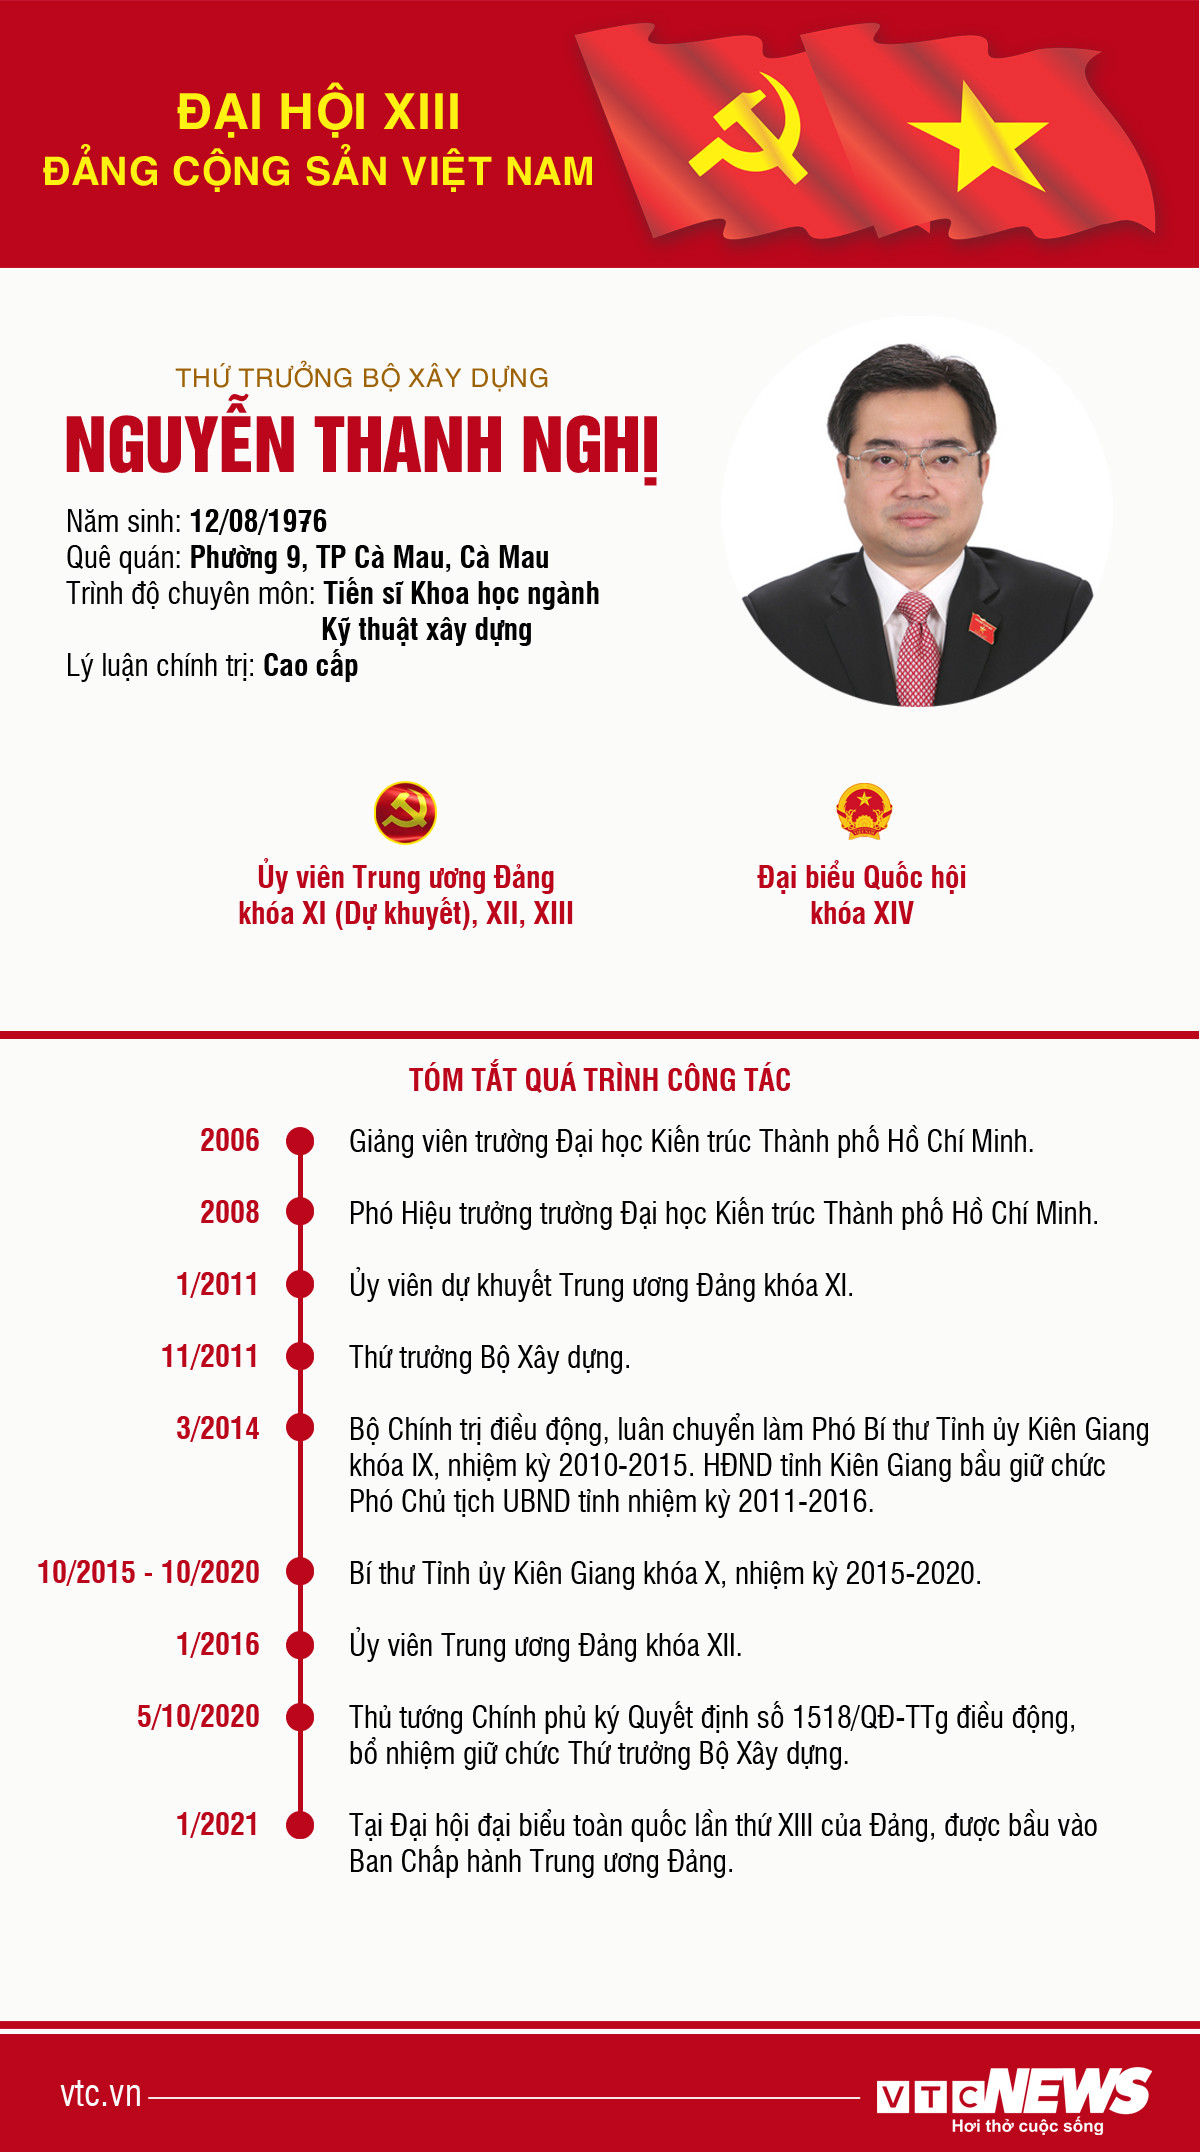 Infographic: Sự nghiệp Thứ trưởng Bộ Xây dựng Nguyễn Thanh Nghị - 1